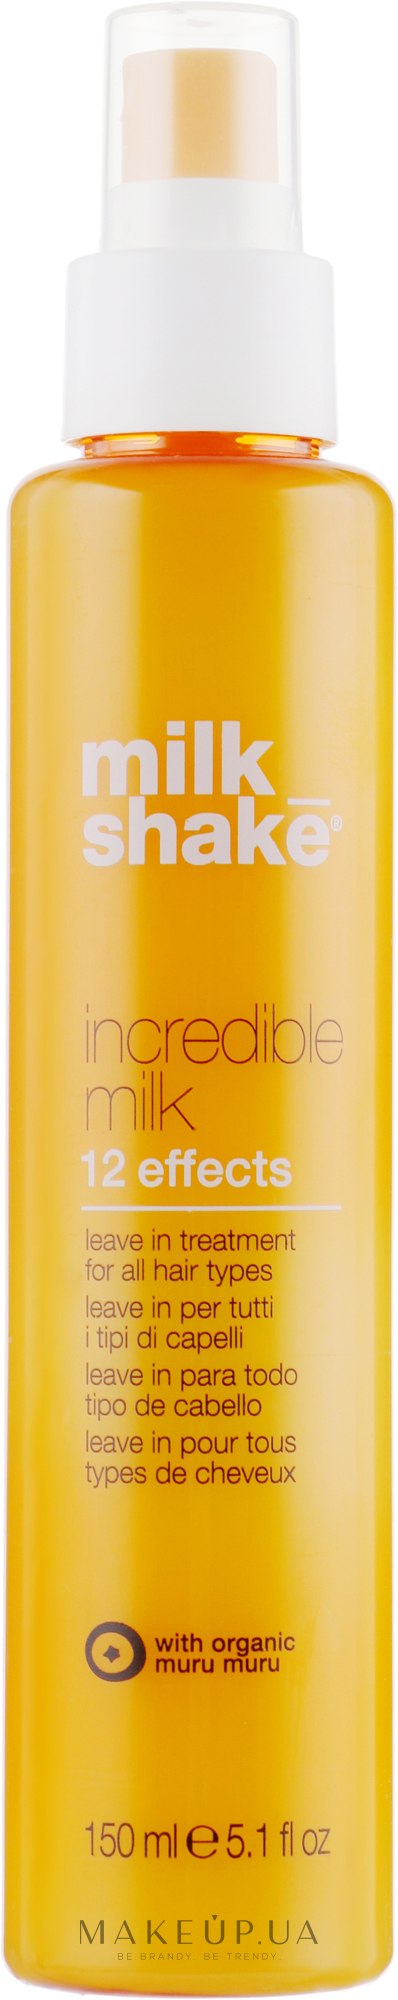 Незмивна маска-спрей для волосся з 12 активними ефектами - Milk_Shake Incredible Milk — фото 150ml